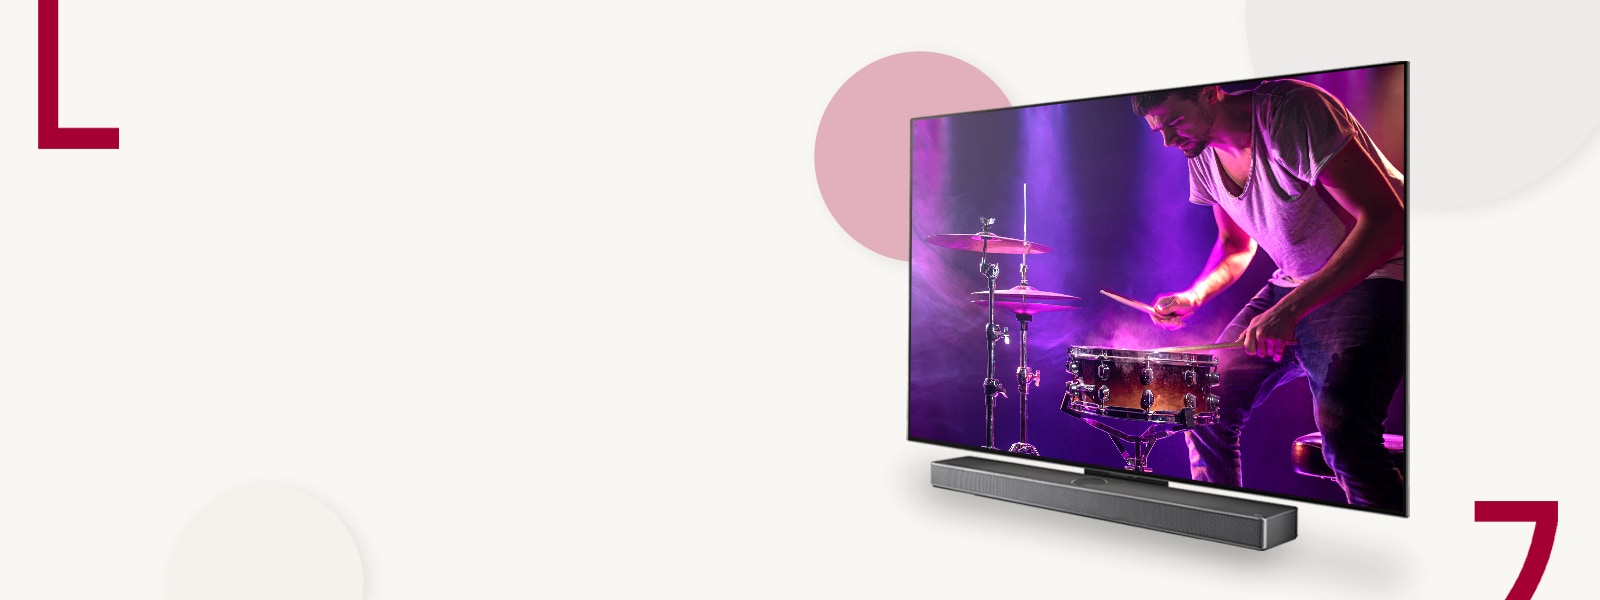 "Hình ảnh của LG OLED C3 và Soundbar chống lại  Một phông nền màu kem với các vòng tròn màu. Một người đàn ông chơi trống trên màn hình. "